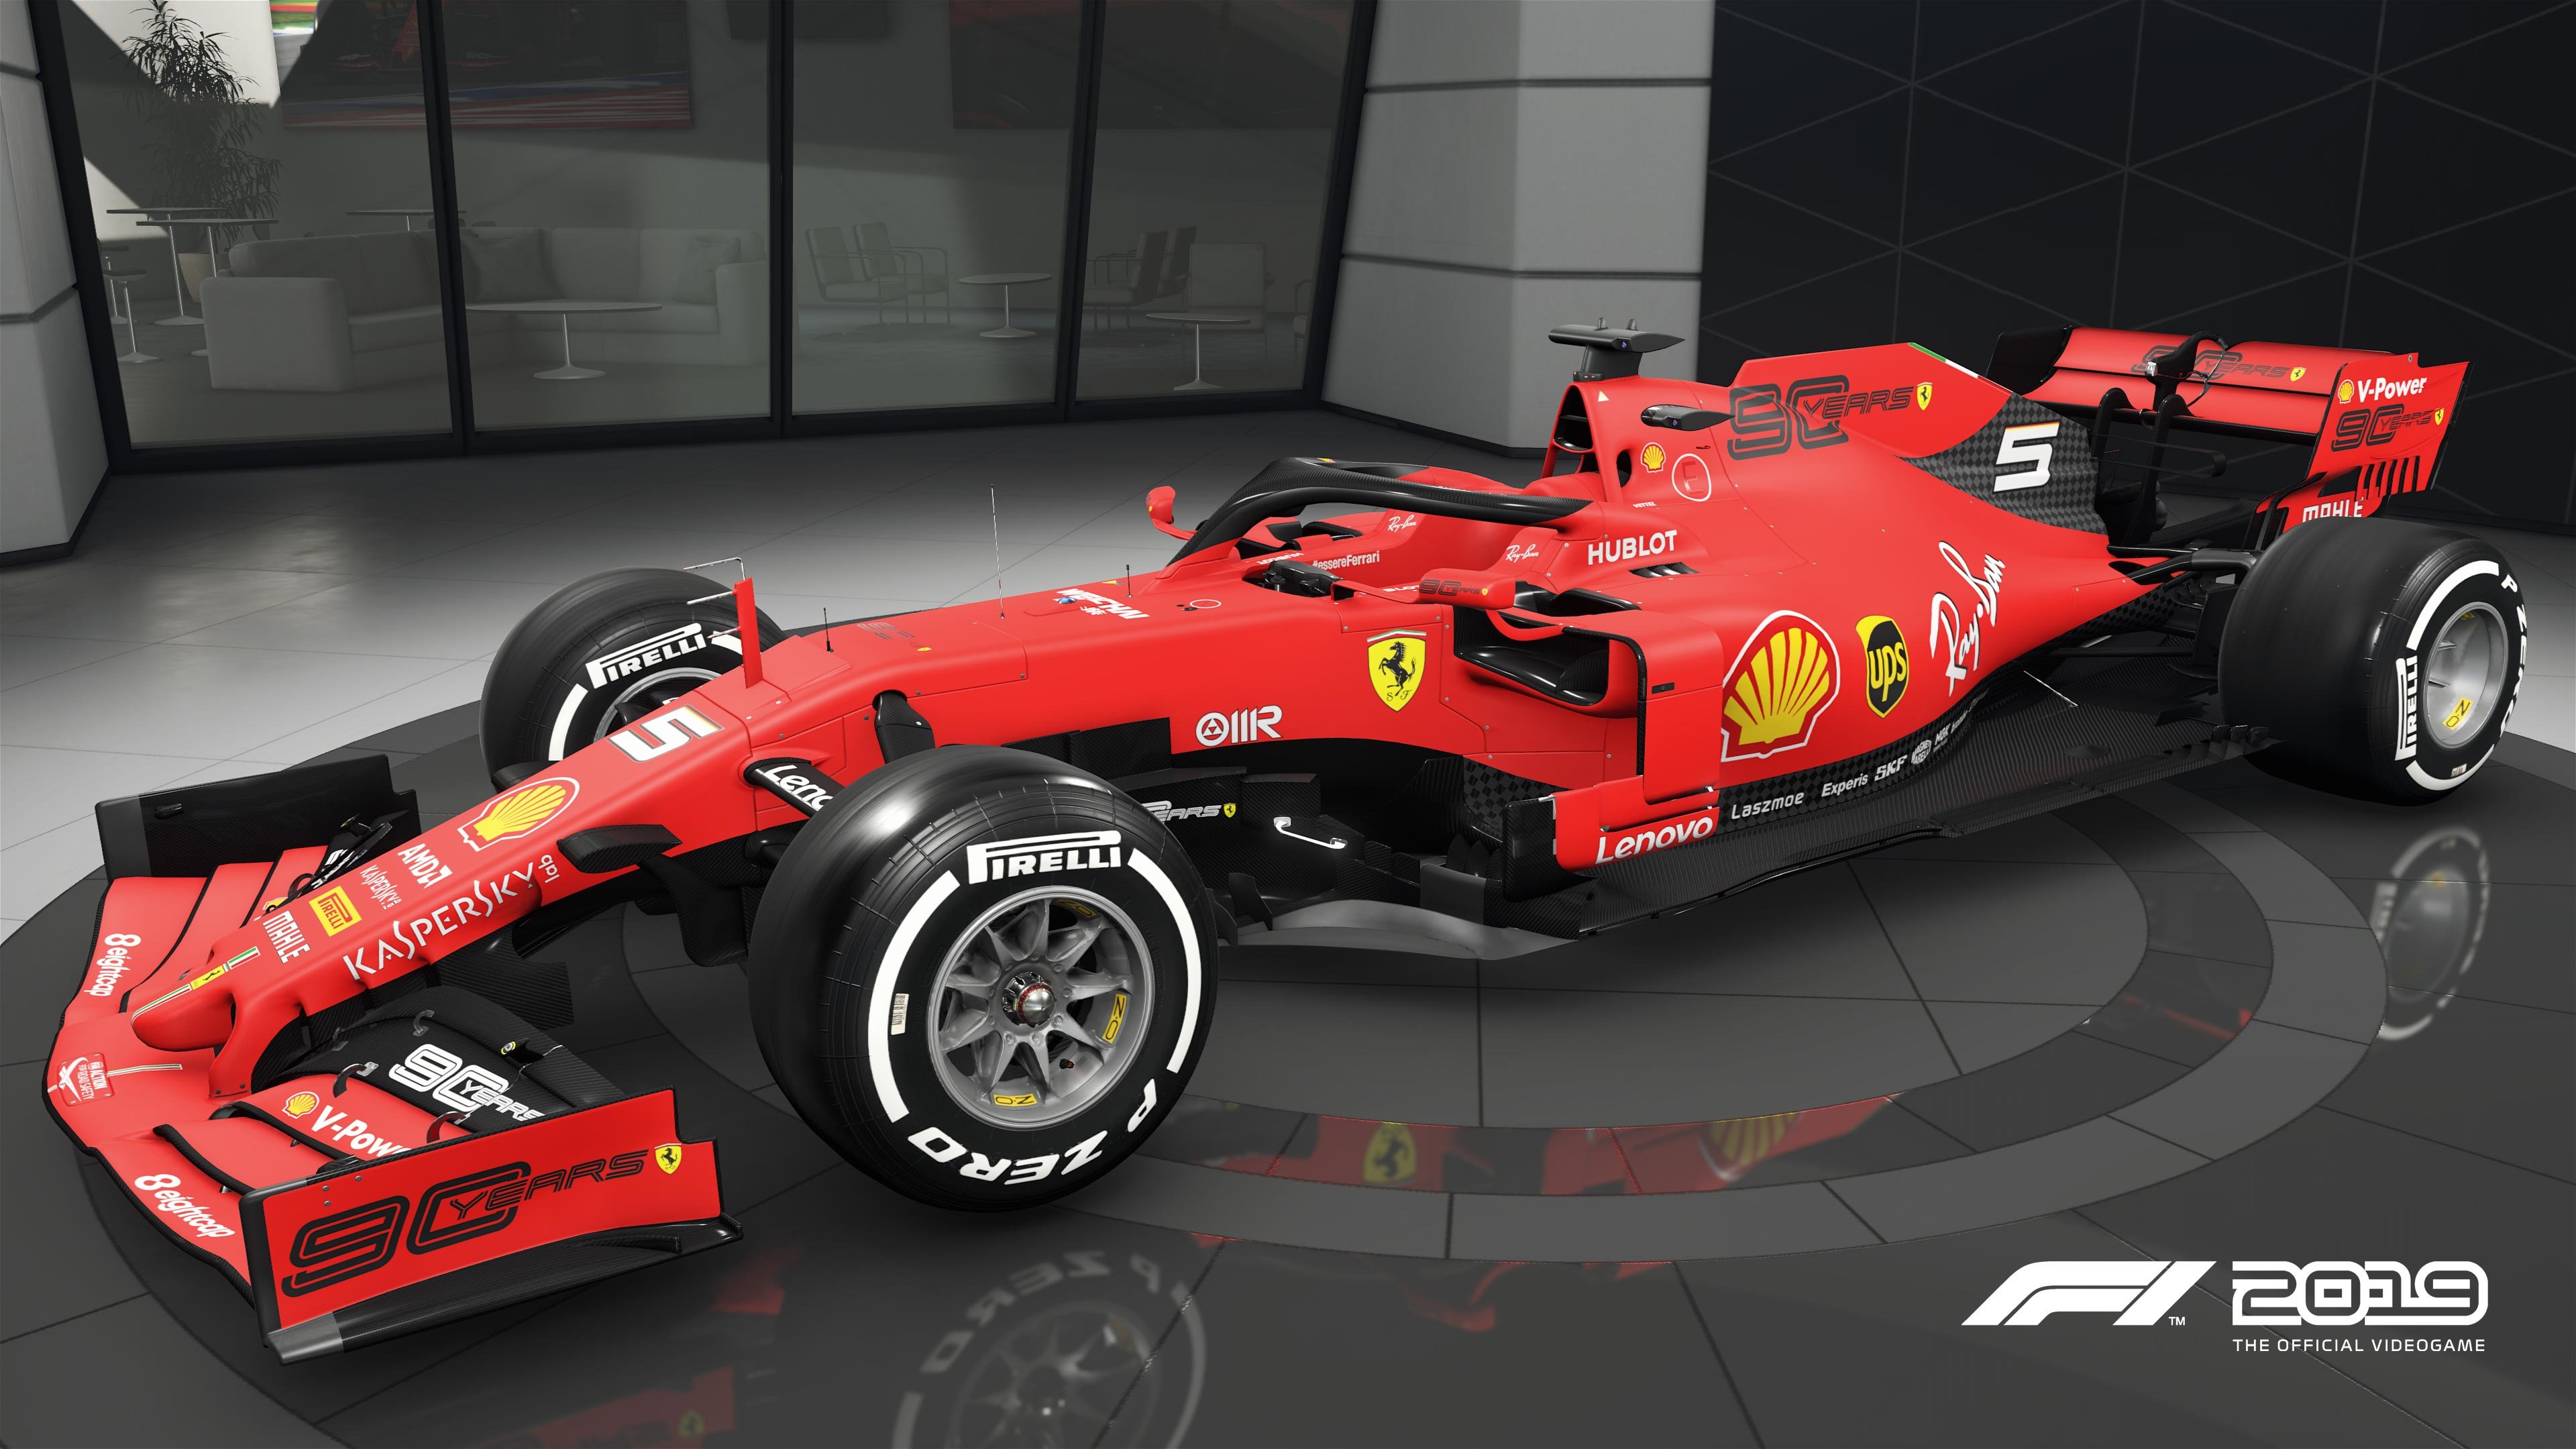 More information about "F1 2019 Codemasters: disponibile la patch v1.08 con vari miglioramenti grafici"